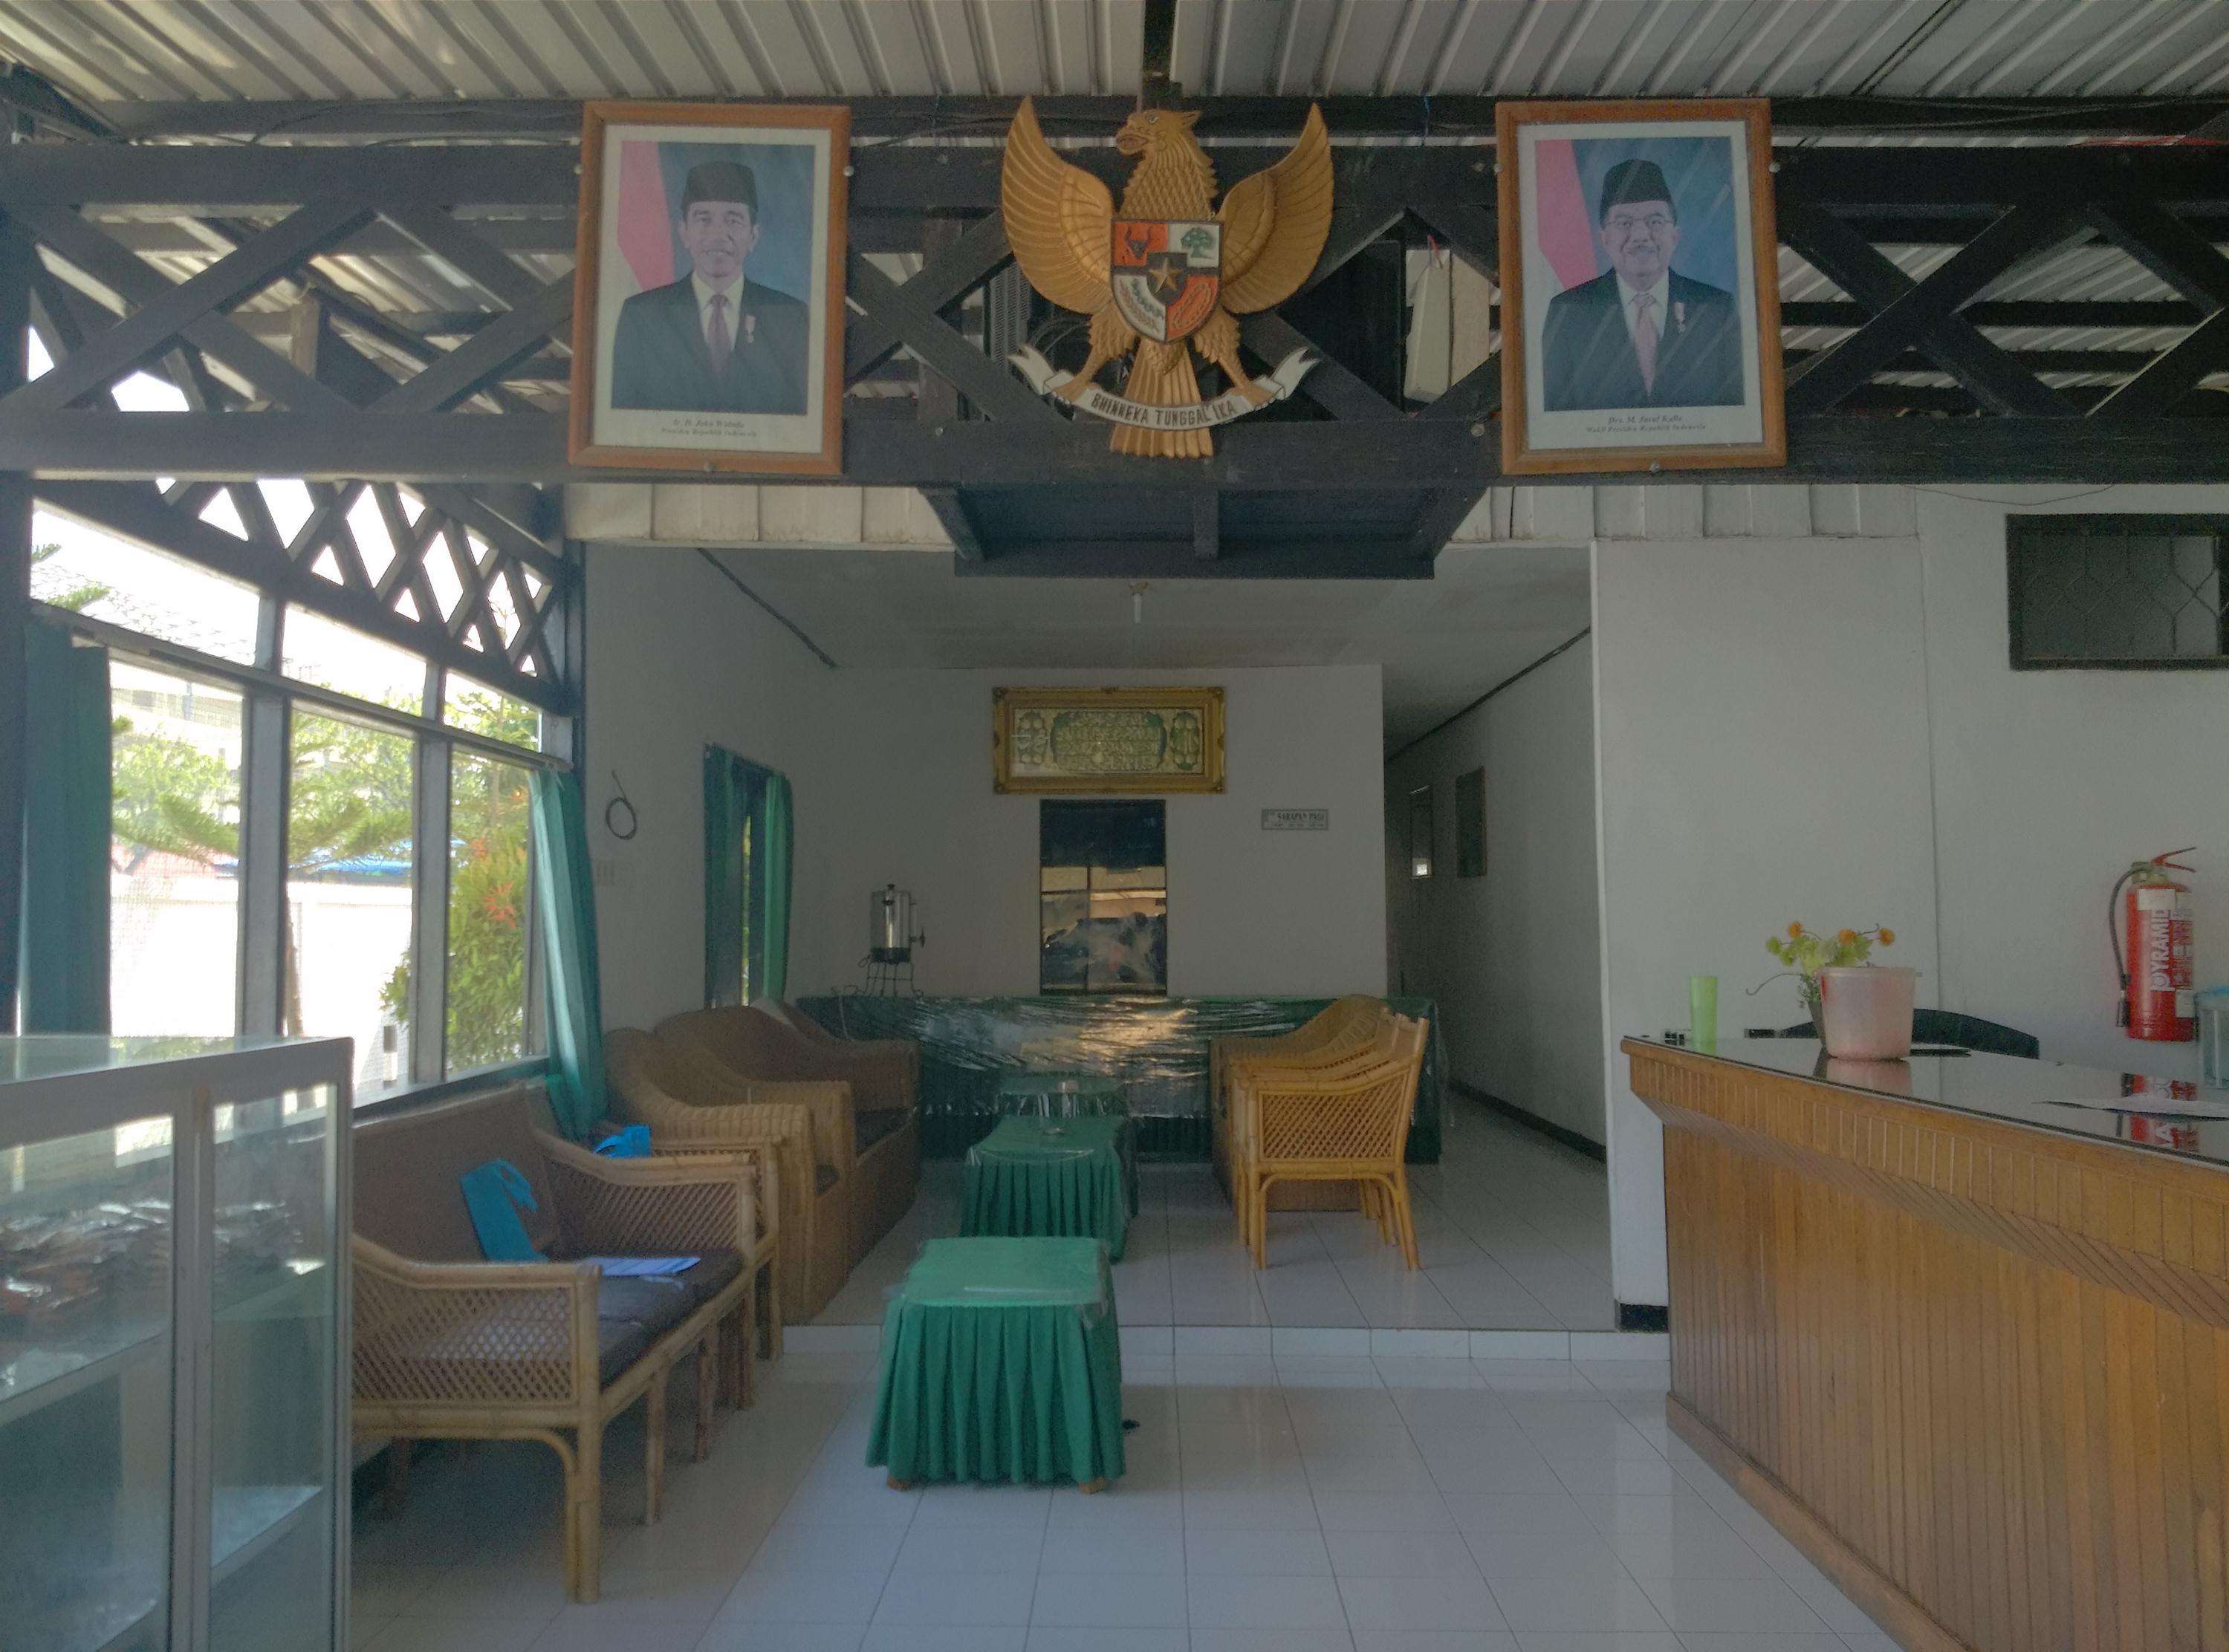 Harga kamar Hotel Surya Raya 1, Bontang Utara untuk tanggal 17-12-2022